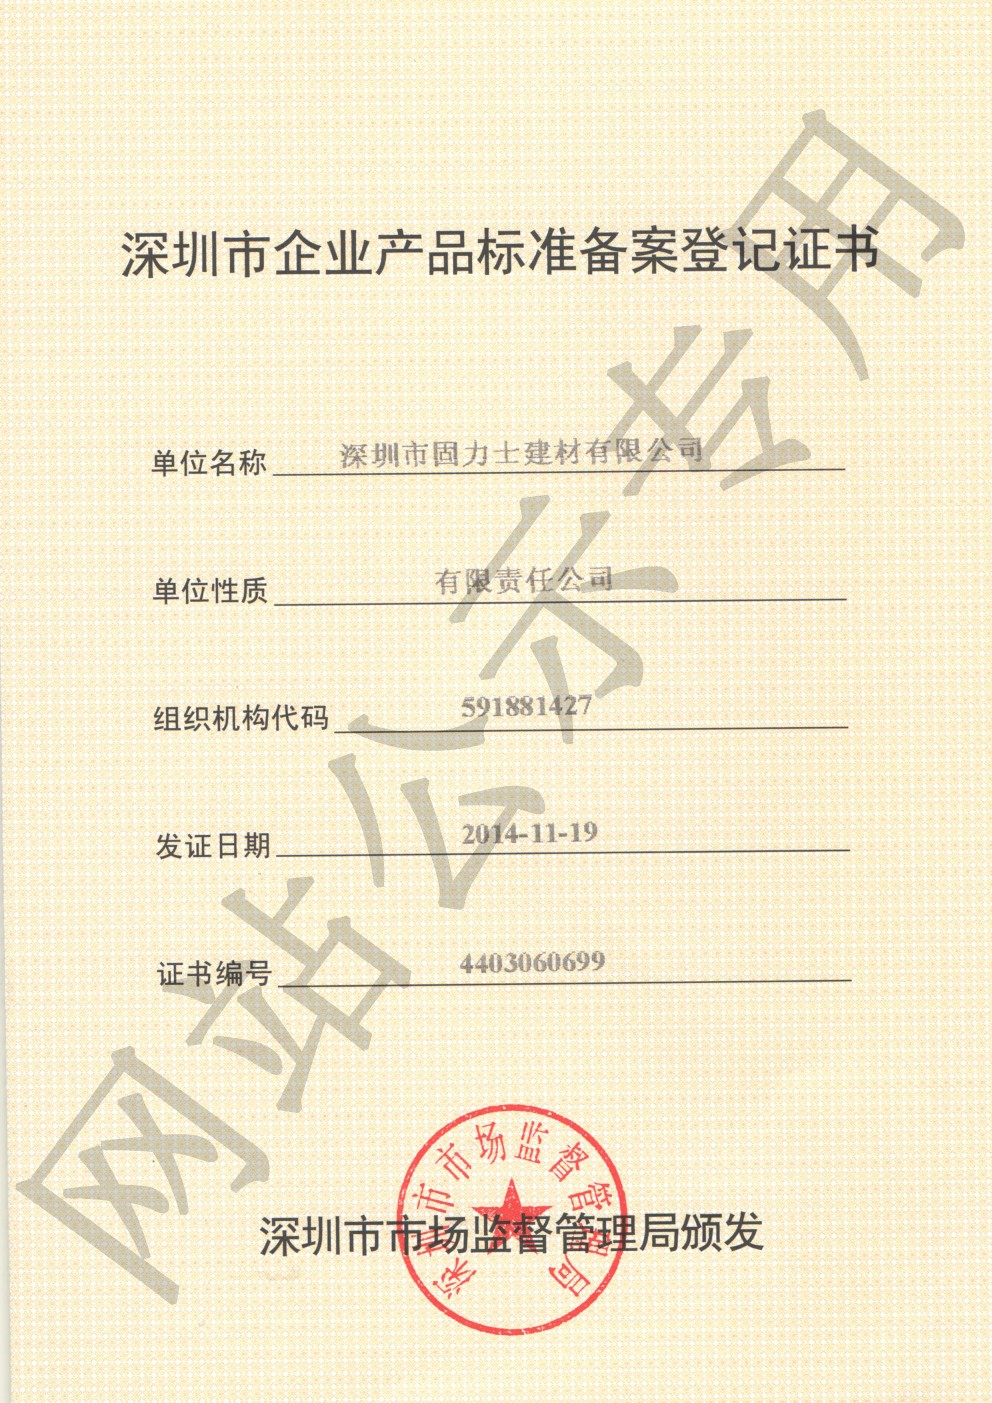 沙雅企业产品标准登记证书